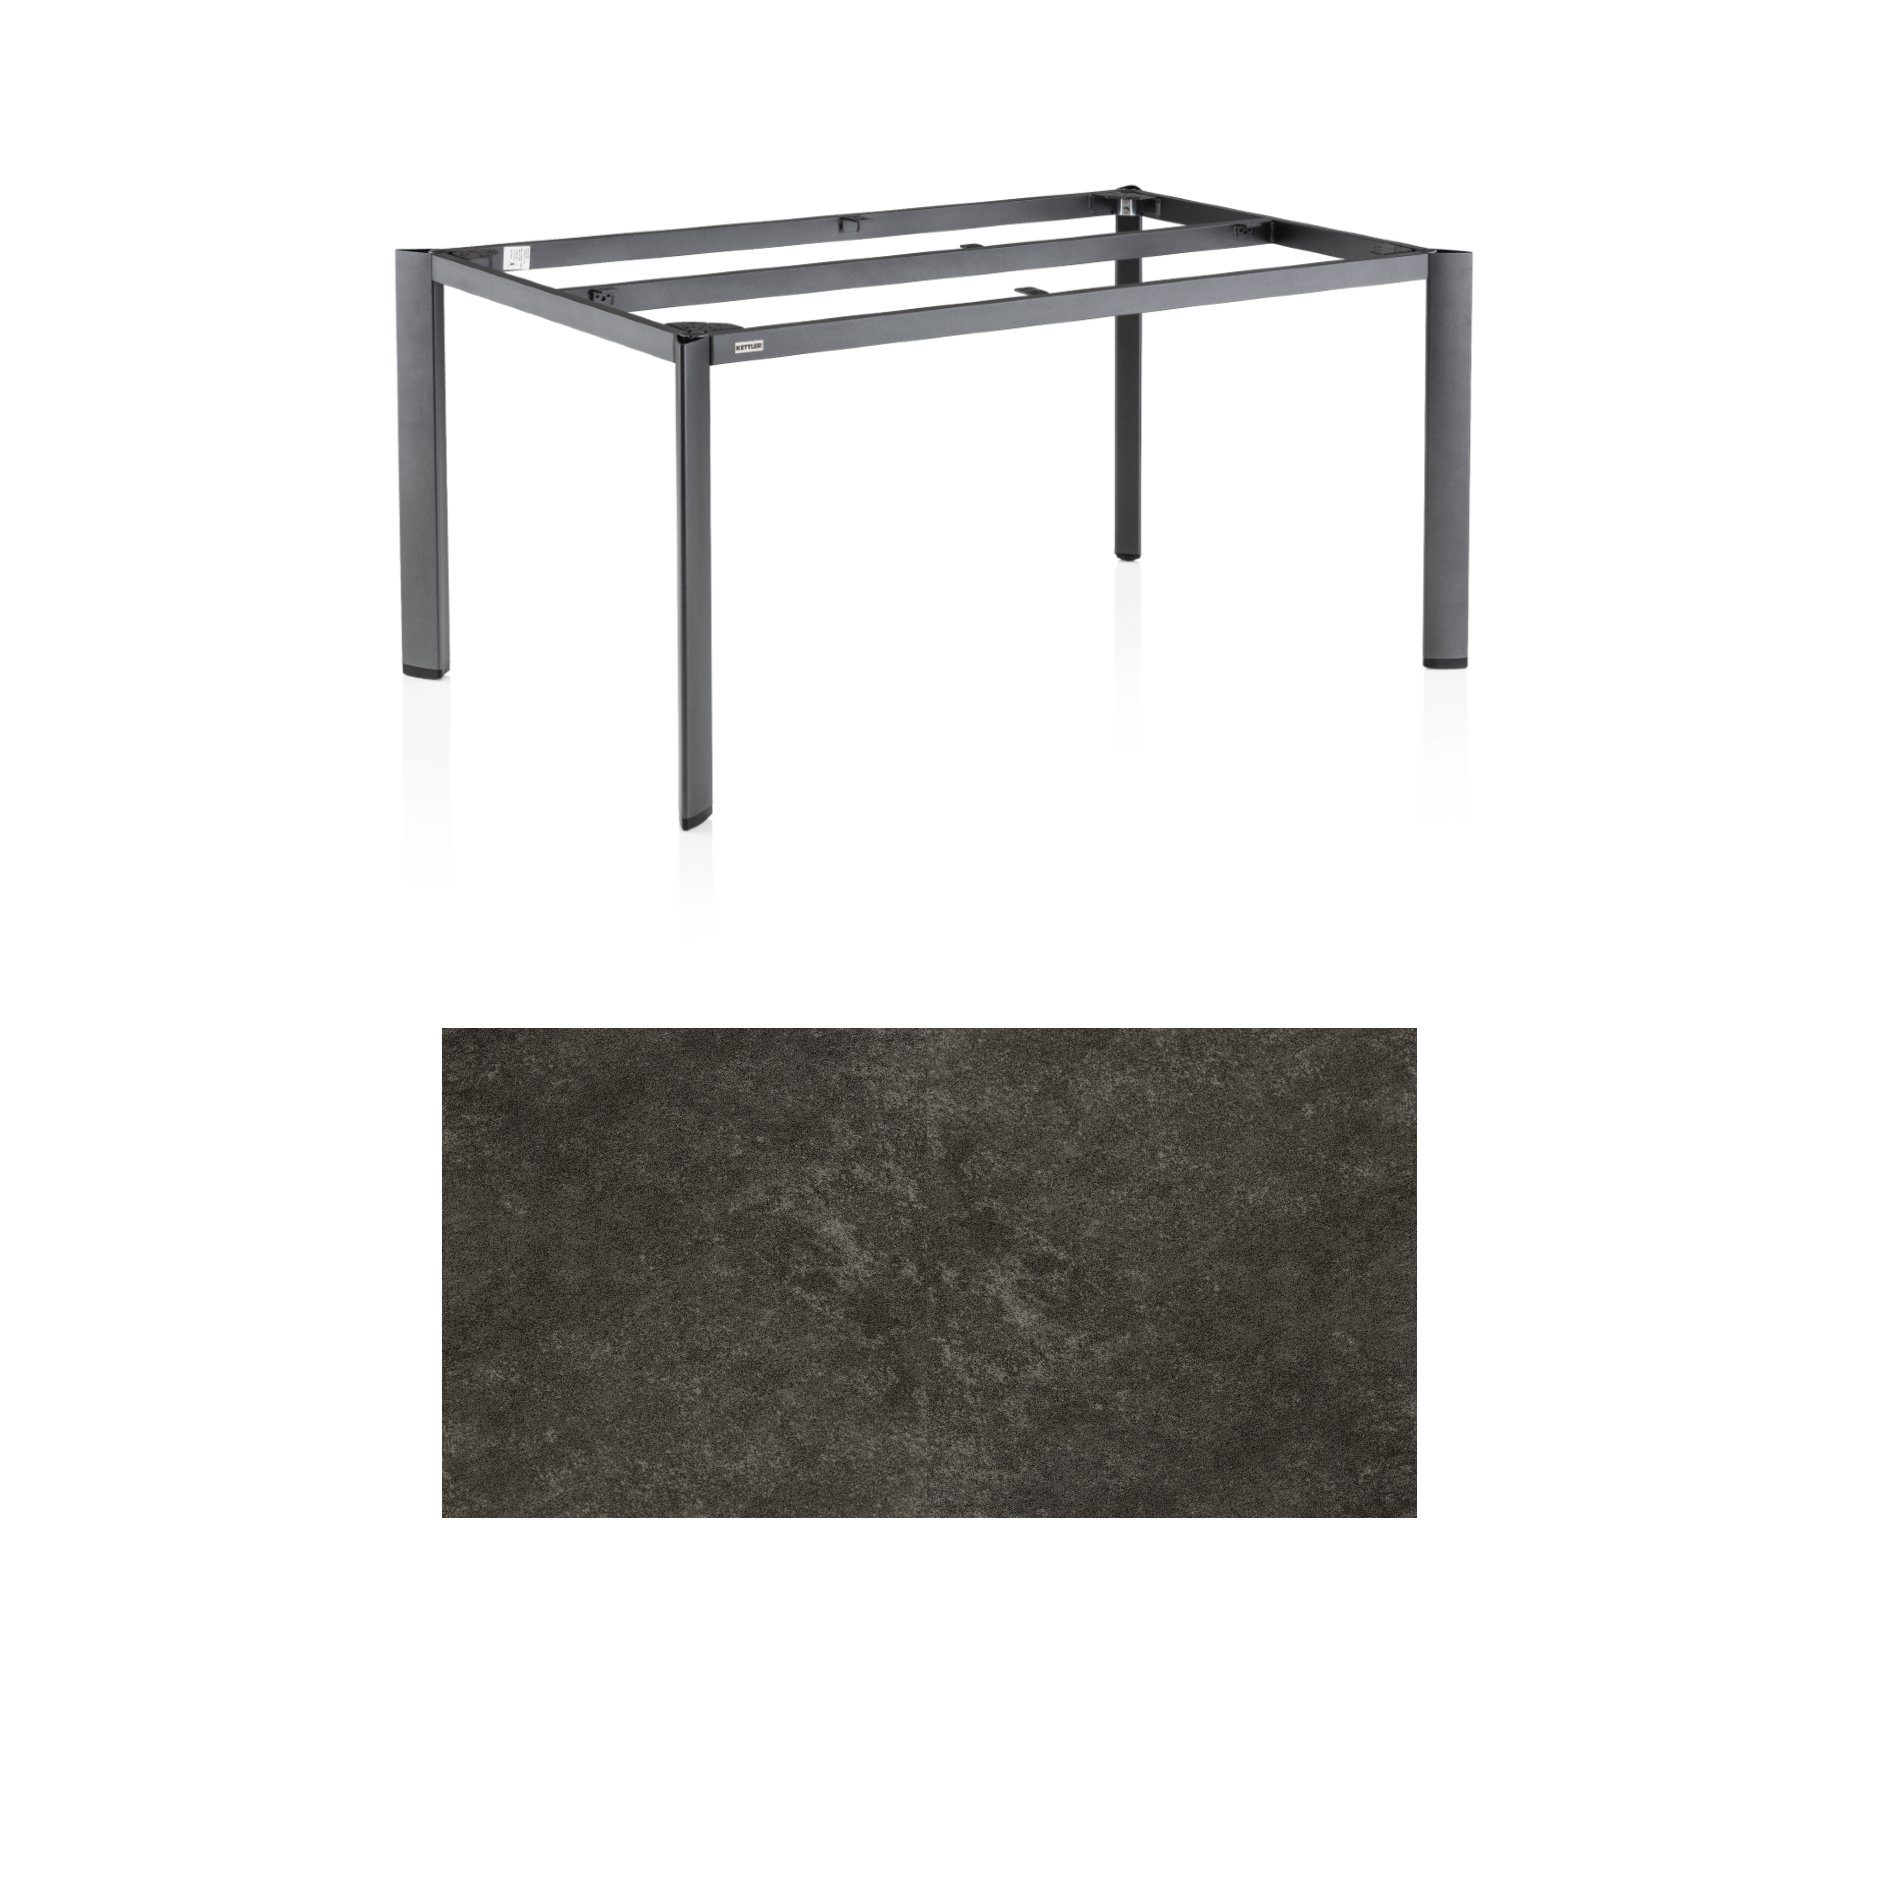 Kettler "Edge" Gartentisch, Tischgestell 160x95cm, Aluminium eisengrau, mit Tischplatte Keramik anthrazit